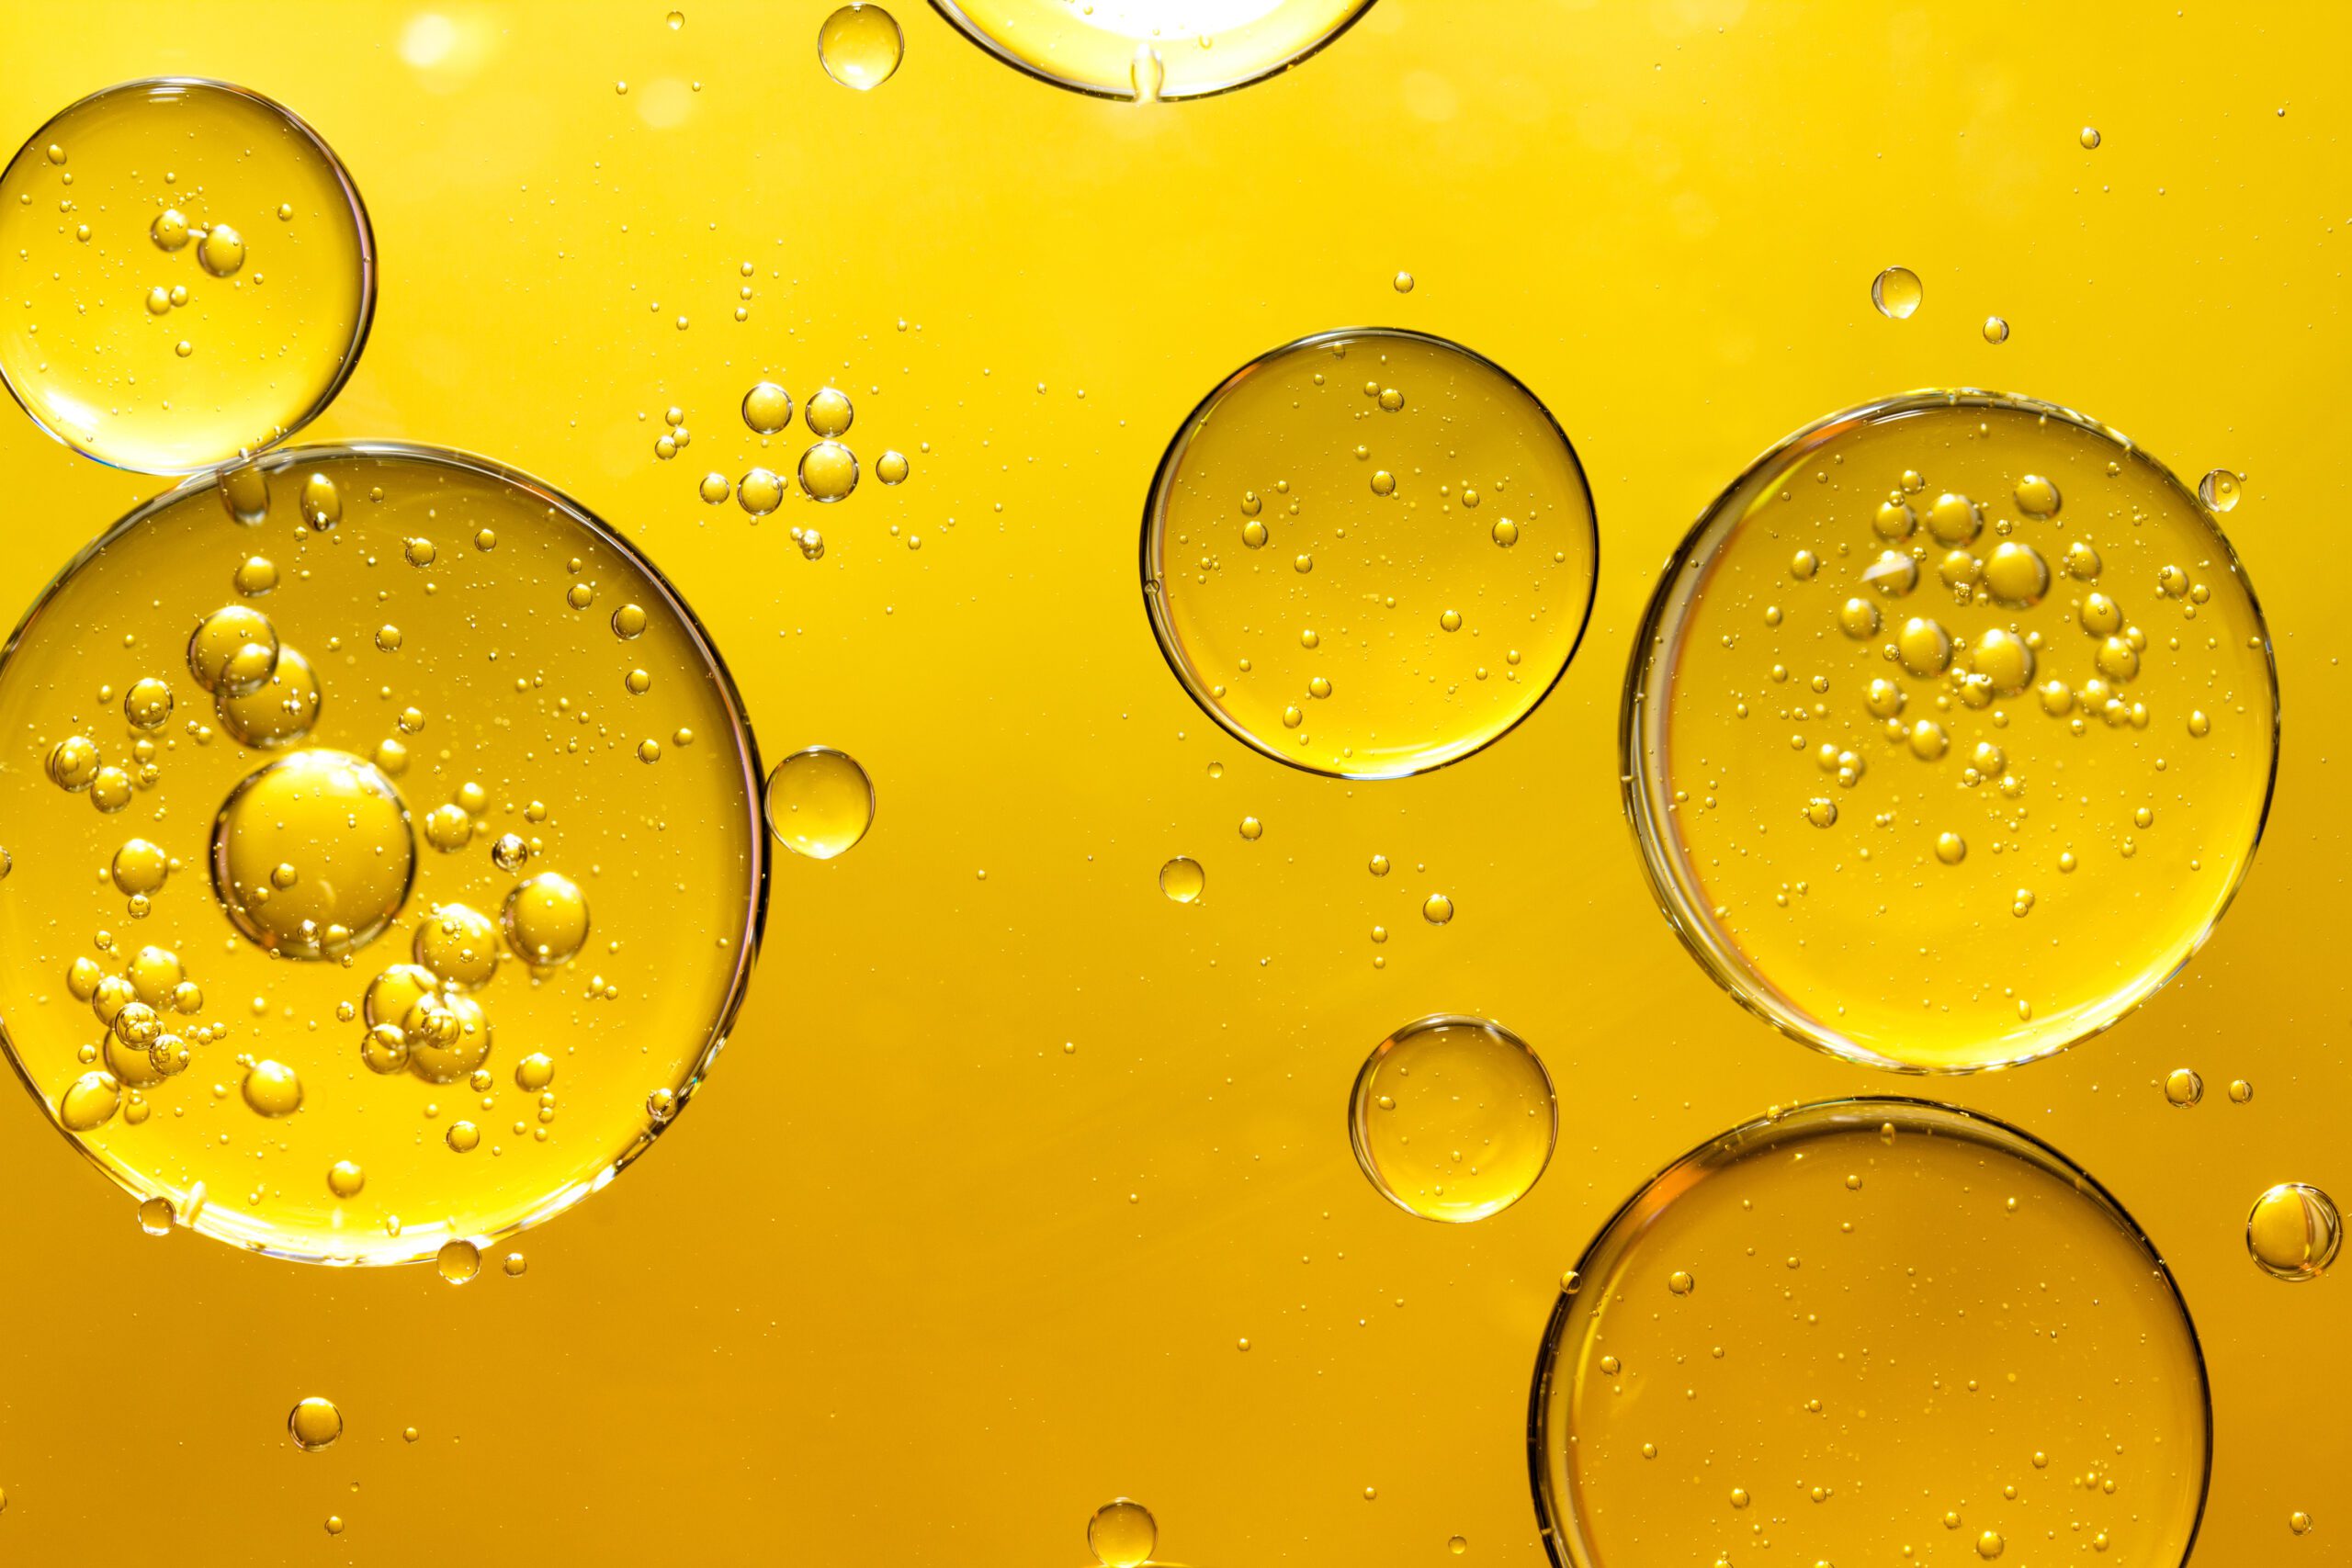 Bolle d'olio - Oli e miscele oleose